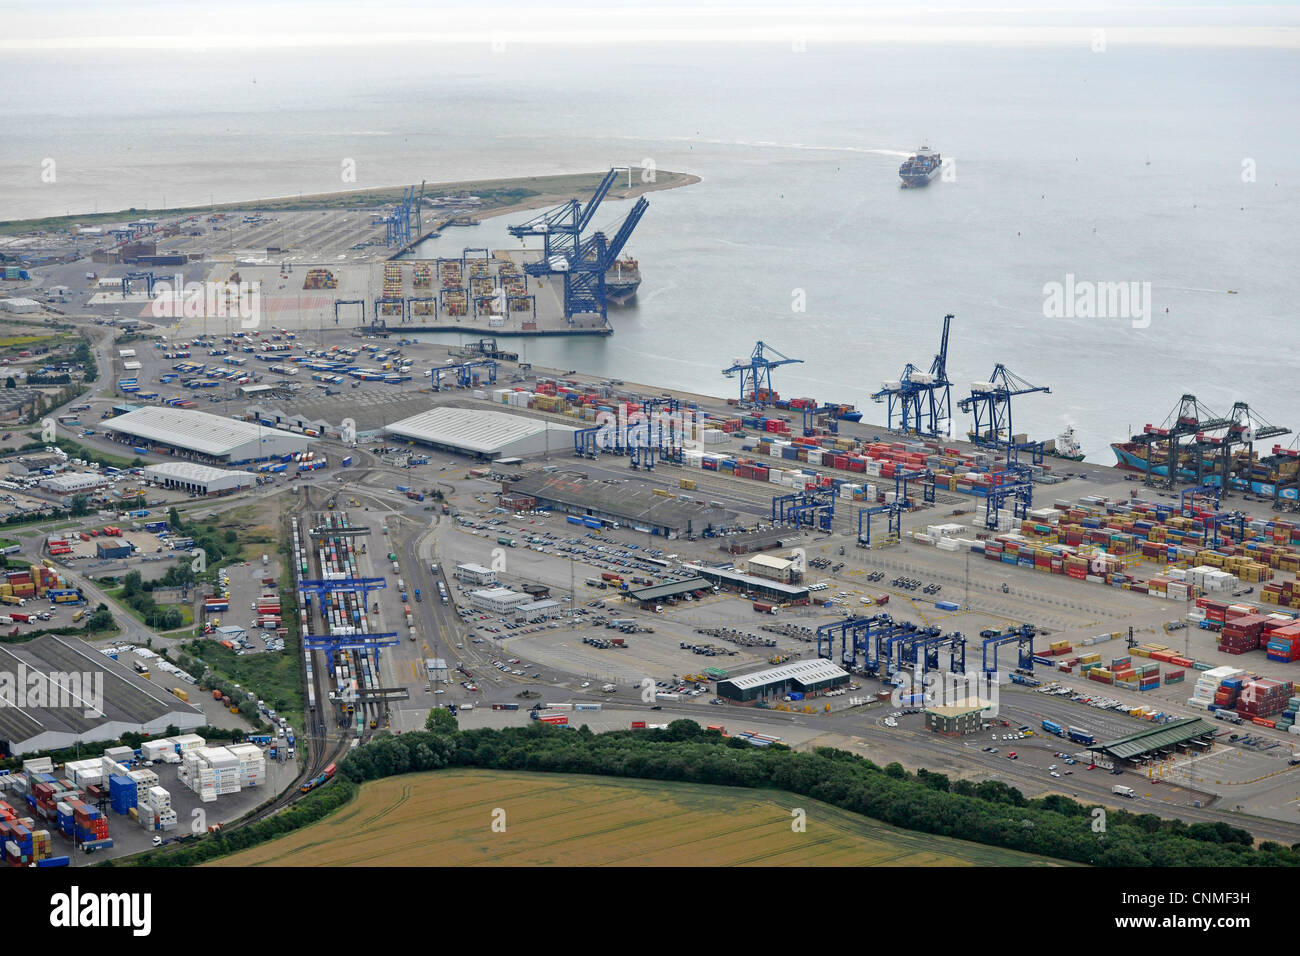 Fotografia aerea mostra Felixstowe Docks con contenitori, gru, navi nel dock e in arrivo nel porto. Mostra anche terminale ferroviario Foto Stock